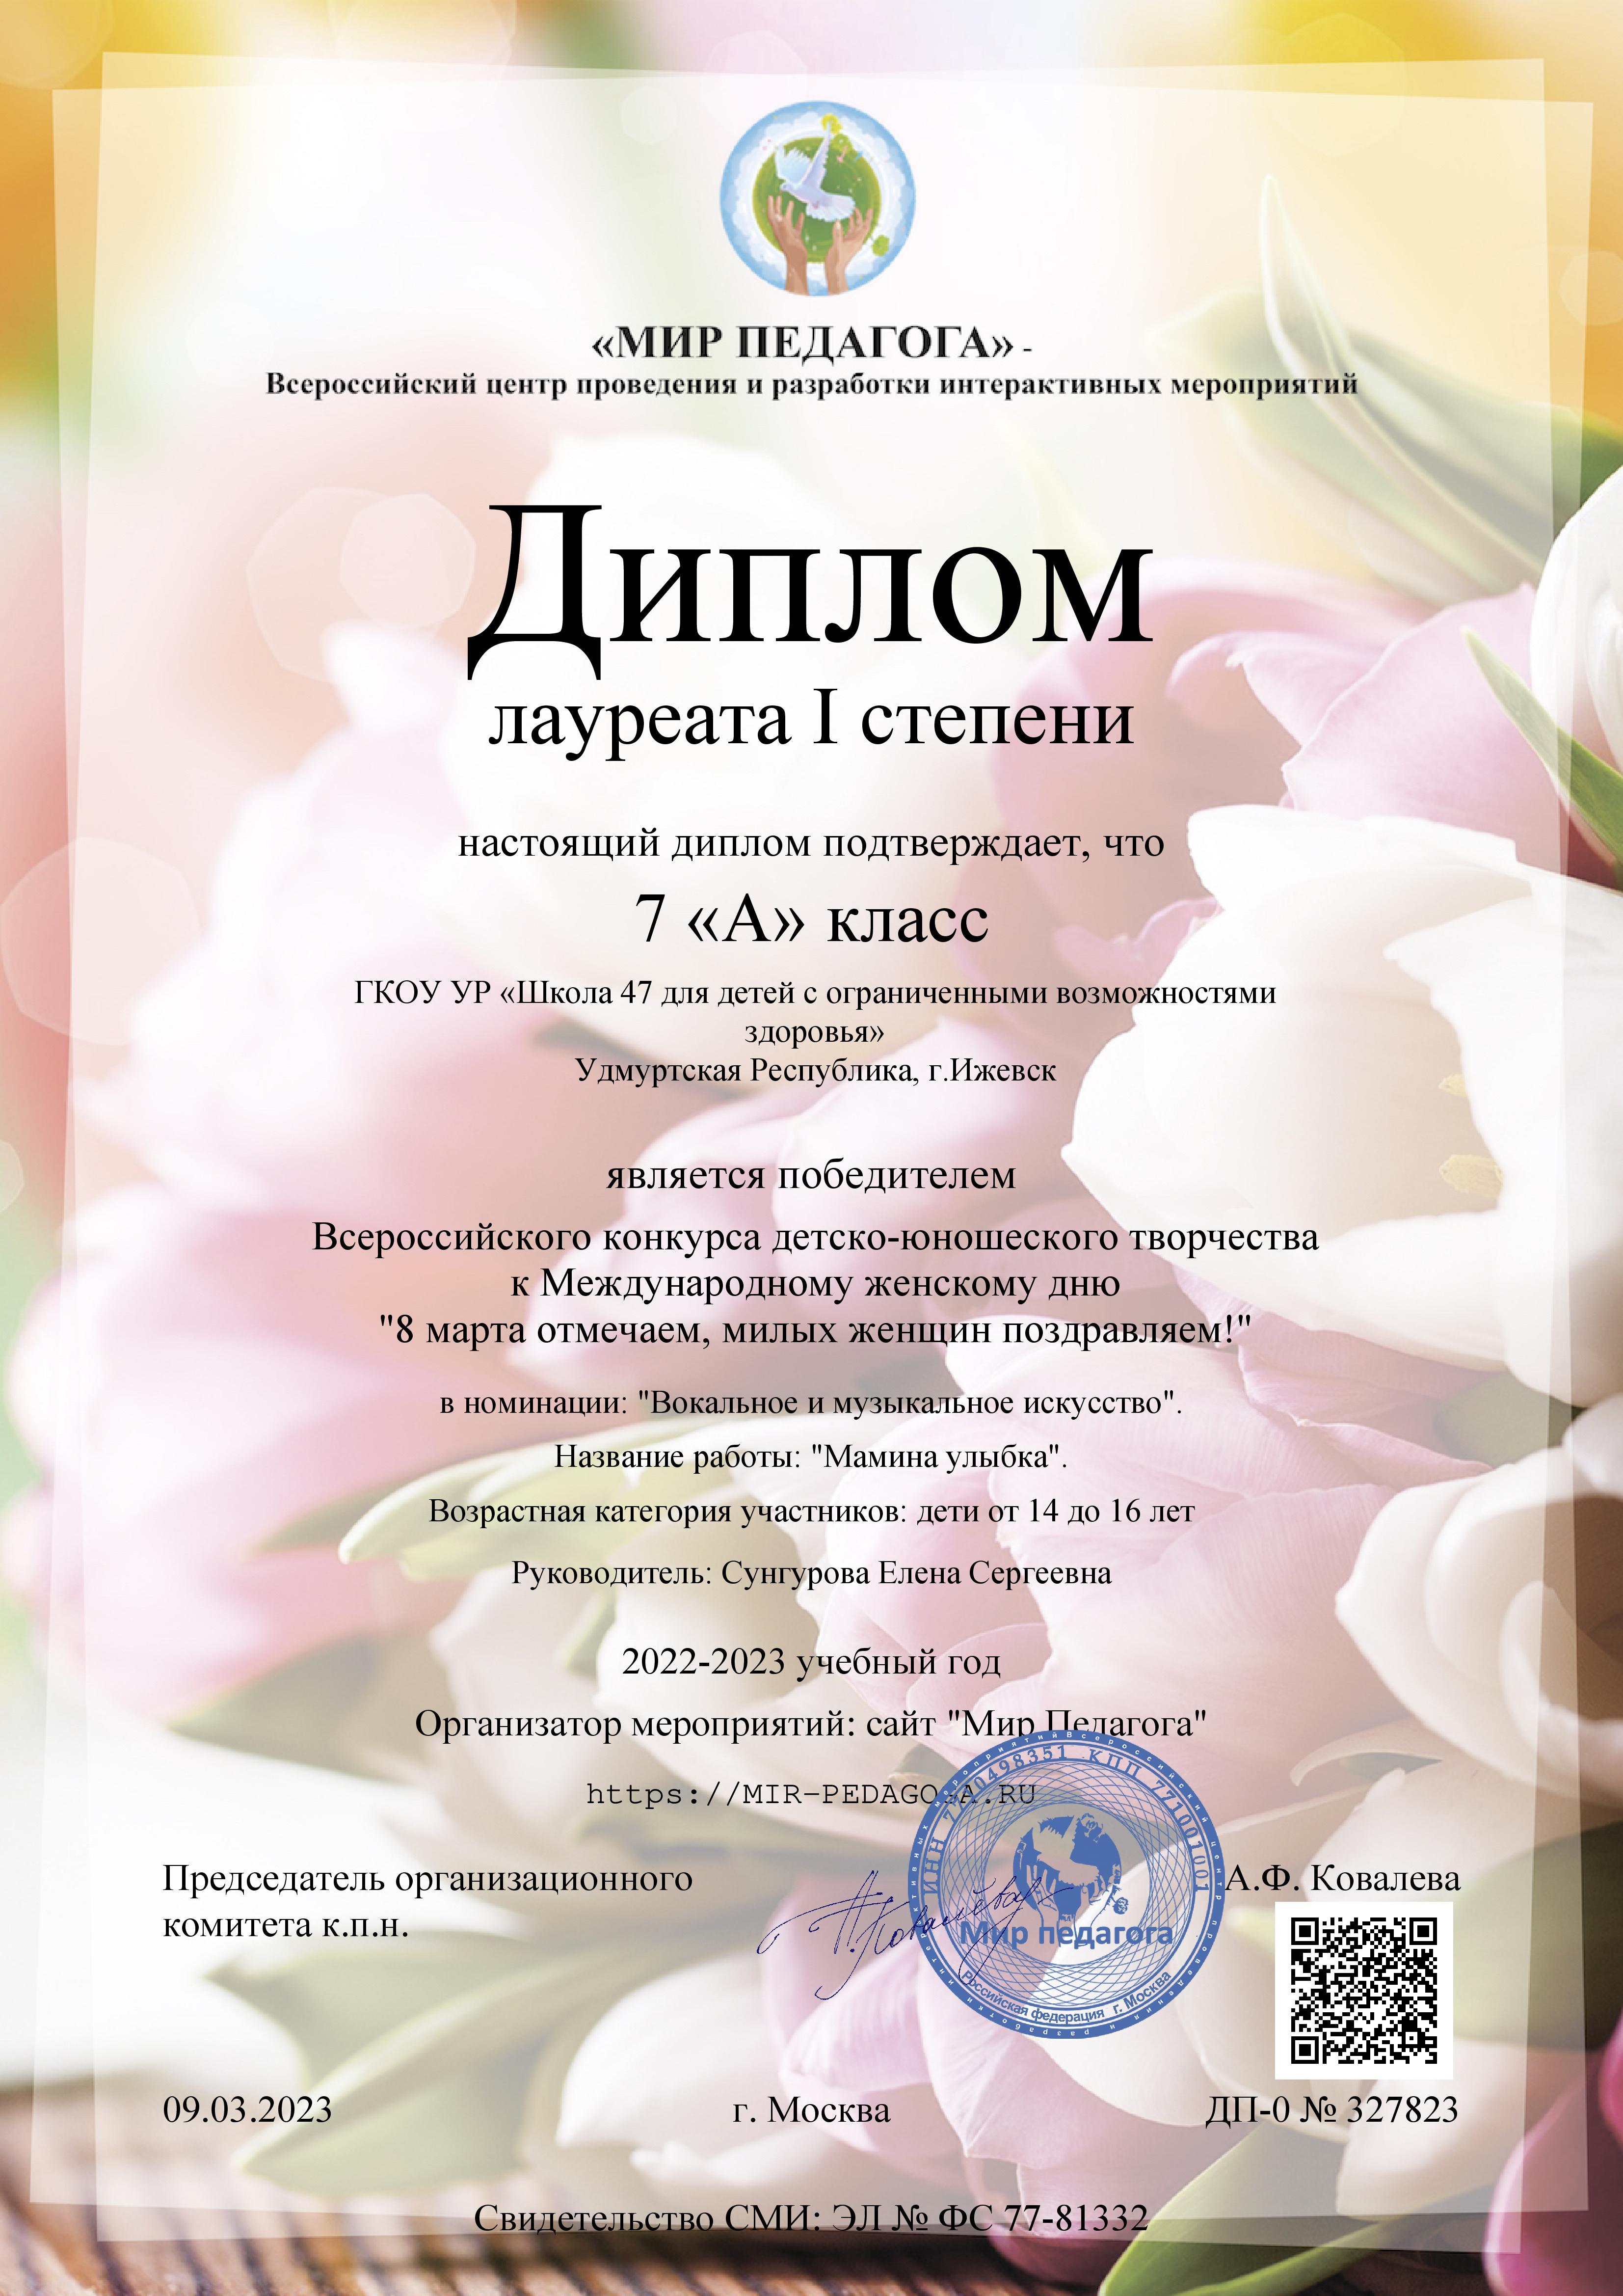 Всероссийский конкурс детско-юношеского творчества к Международному женскому дню &amp;quot;8 Марта отмечаем, милых женщин поздравляем!&amp;quot;.